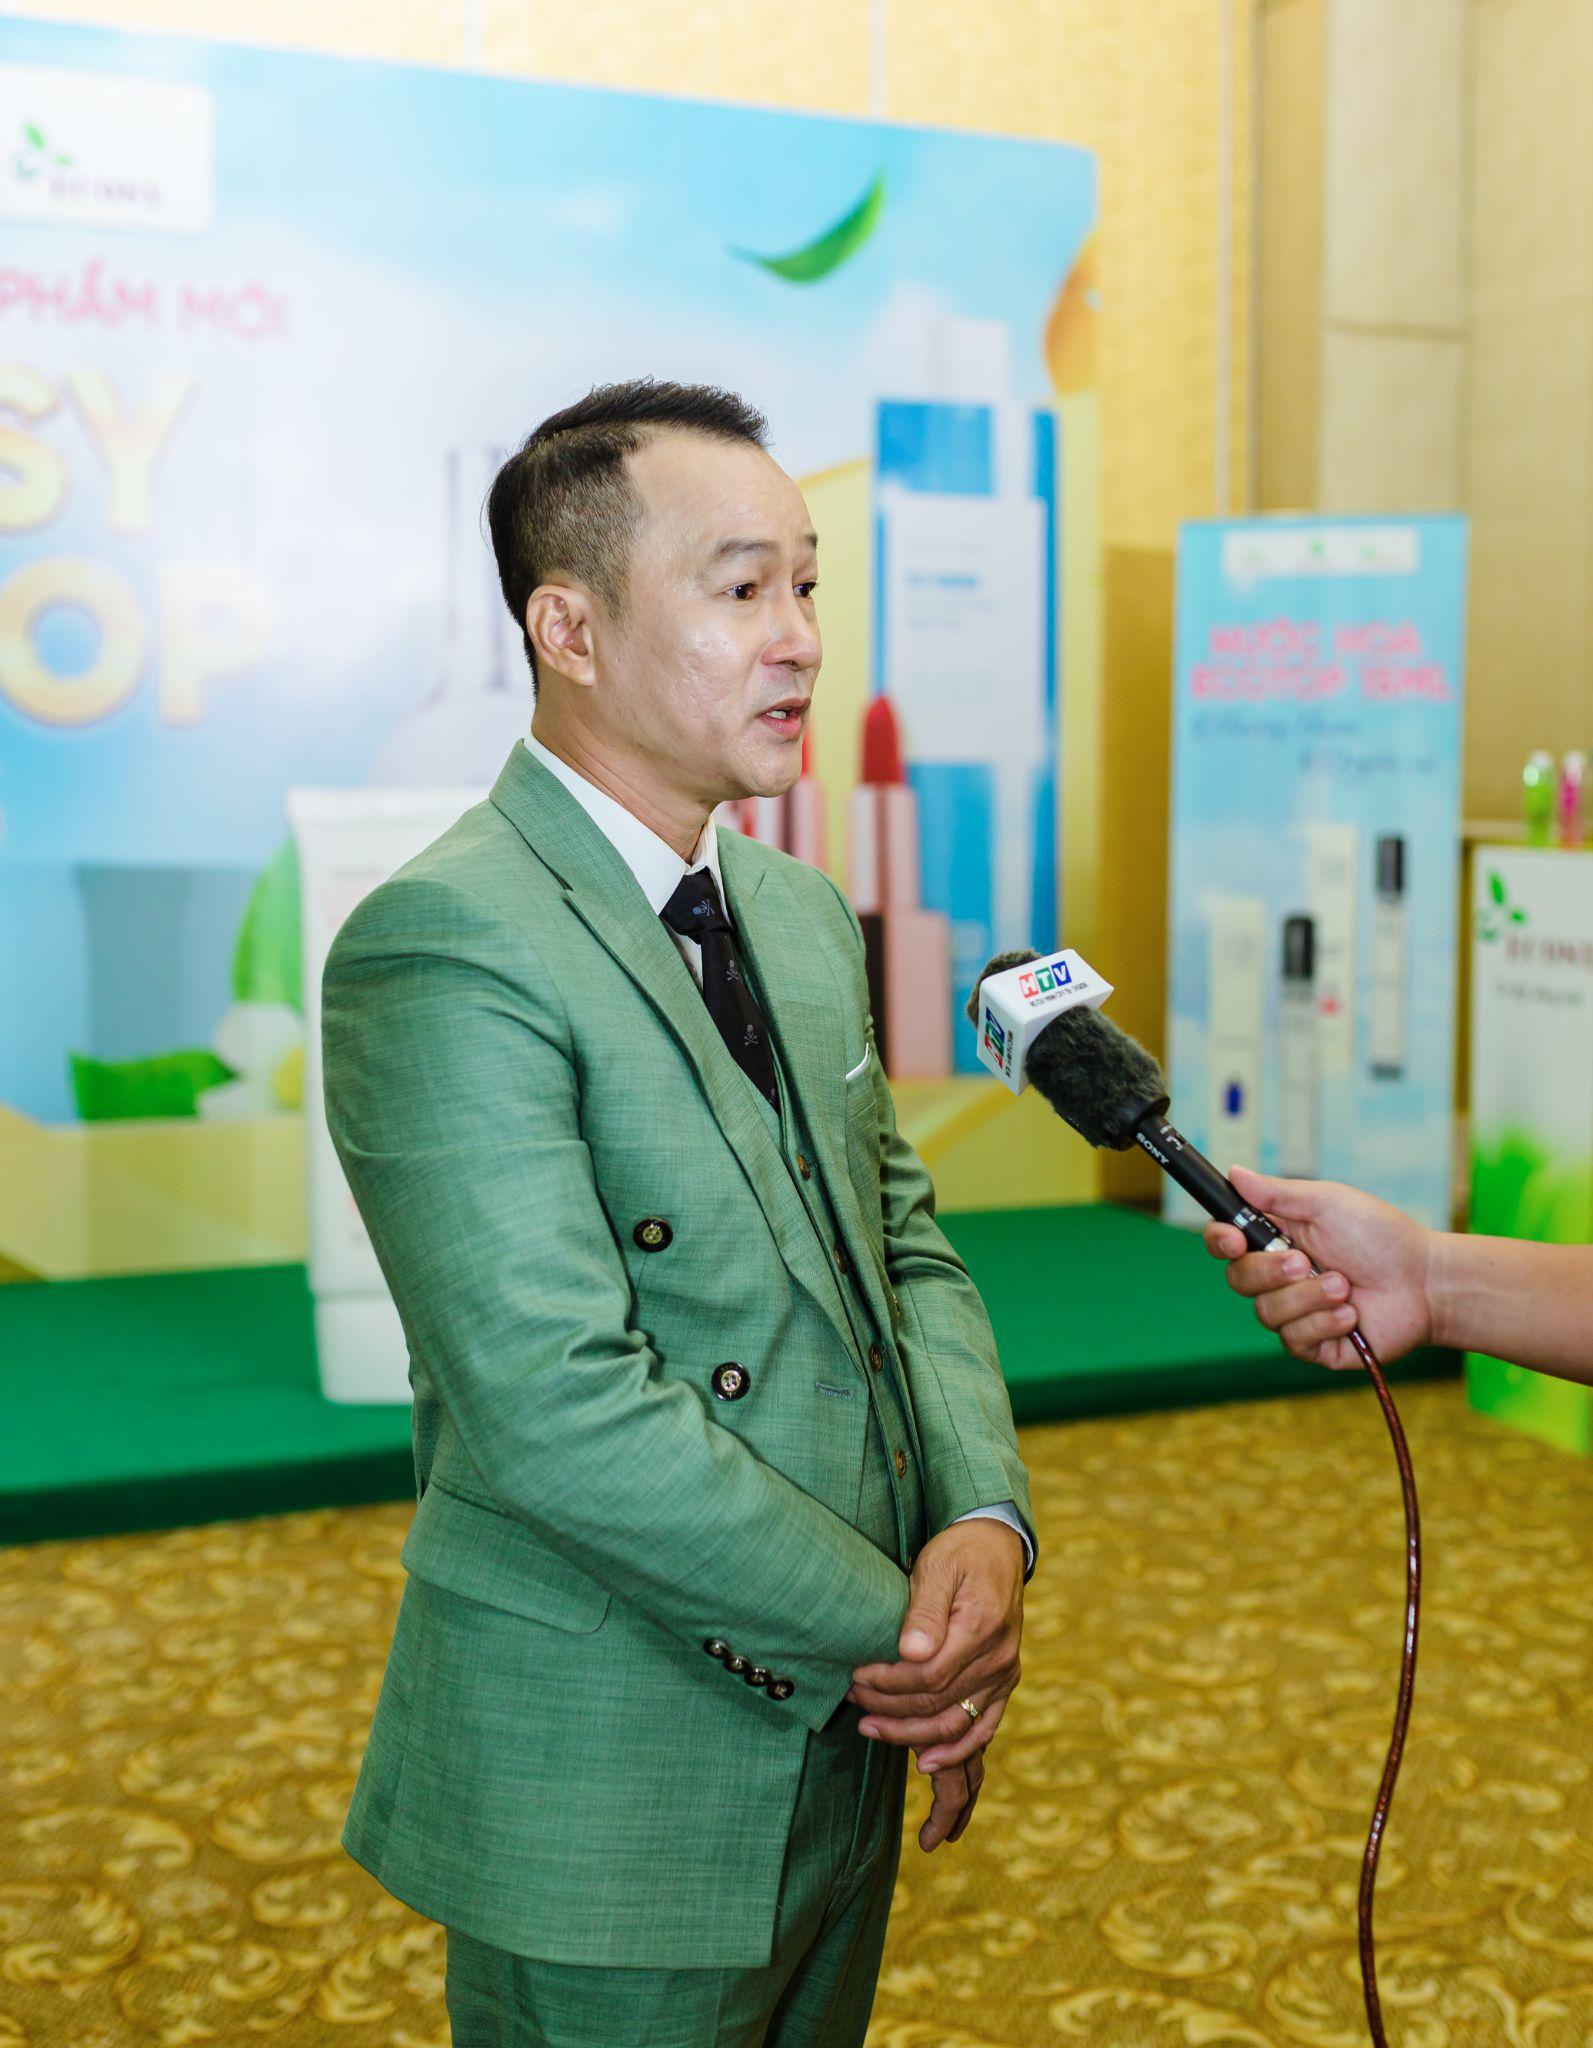 Thương hiệu Ecosy - Ecotop ra mắt dòng sản phẩm mới kỉ niệm 10 năm thành lập Việt - Hàn Cosmetic - Ảnh 2.